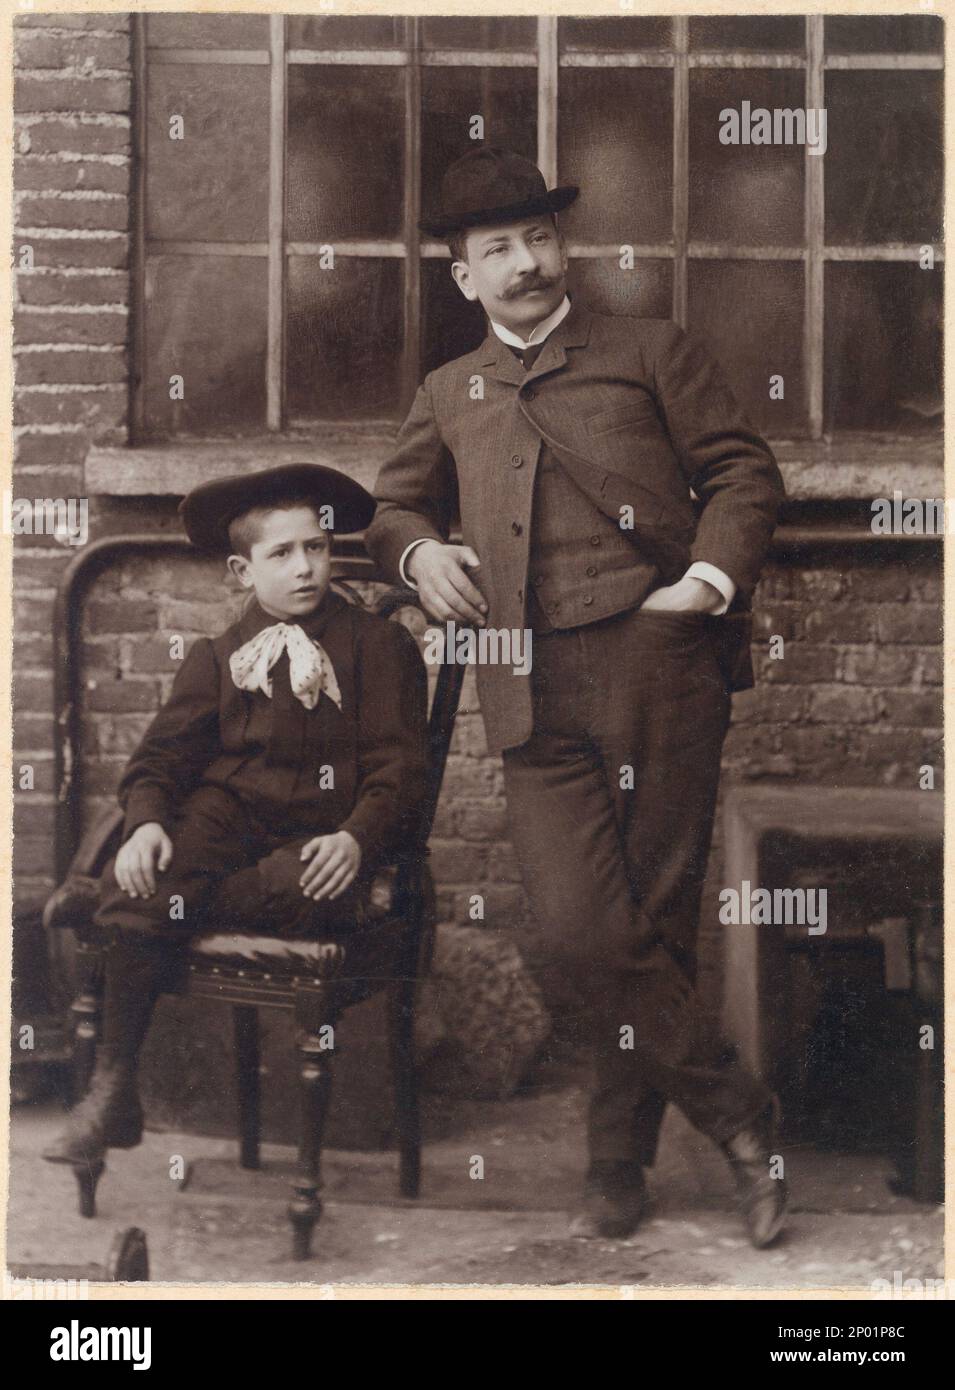 Ca. 1900 , Legnano , Italien : Vater mit Sohn - PADRE e FIGLIO - parenti - FAMIGLIA - FAMILIE - COPPIA - PAAR - Duo - Cravatta - Krawatte - Kragen - colletto - cappello - bambino - Hut - Kinder - BELLE EPOQUE ----- Archivio GBB Stockfoto